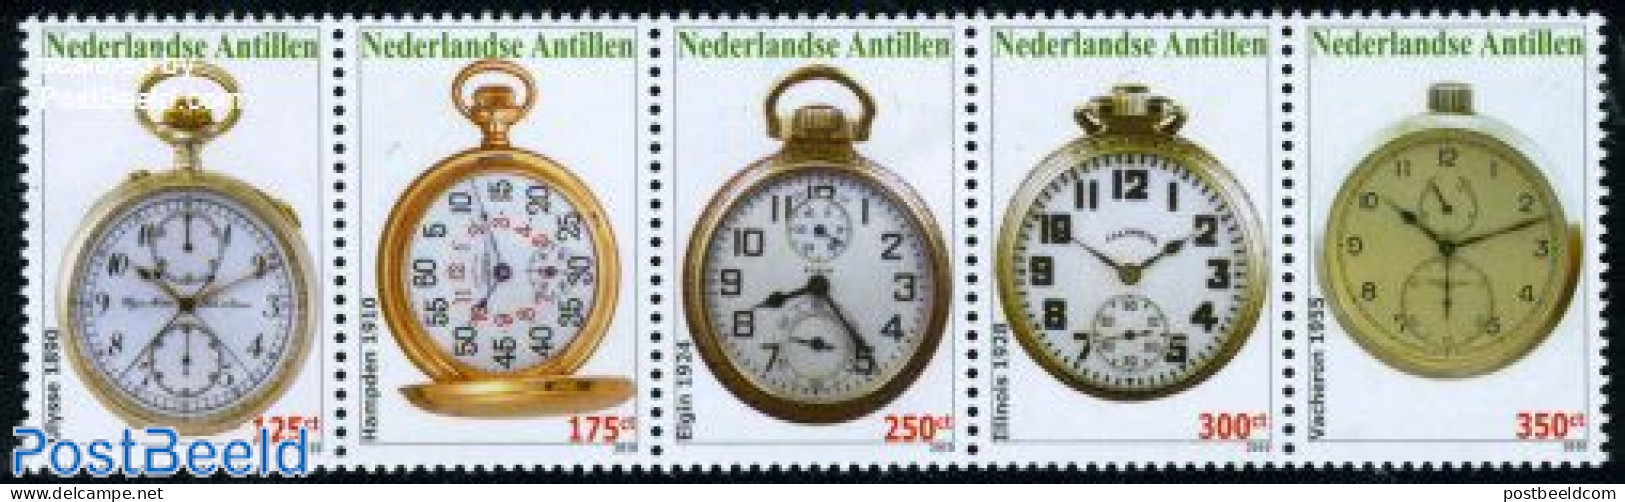 Netherlands Antilles 2010 Pocket Watches 5v [::::], Mint NH, Art - Clocks - Orologeria